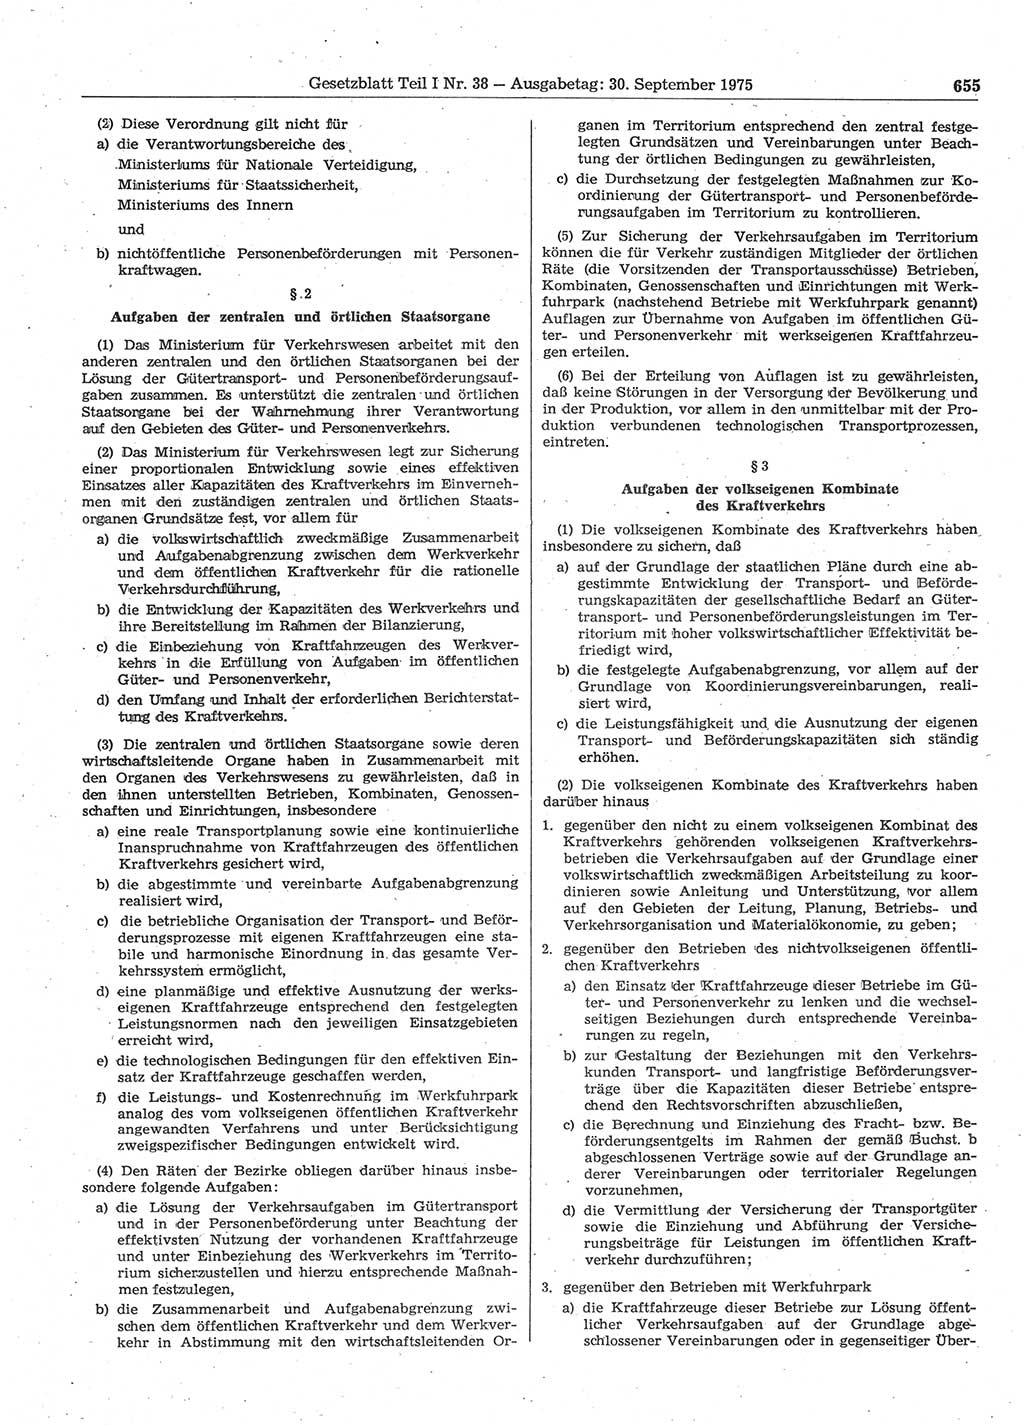 Gesetzblatt (GBl.) der Deutschen Demokratischen Republik (DDR) Teil Ⅰ 1975, Seite 655 (GBl. DDR Ⅰ 1975, S. 655)